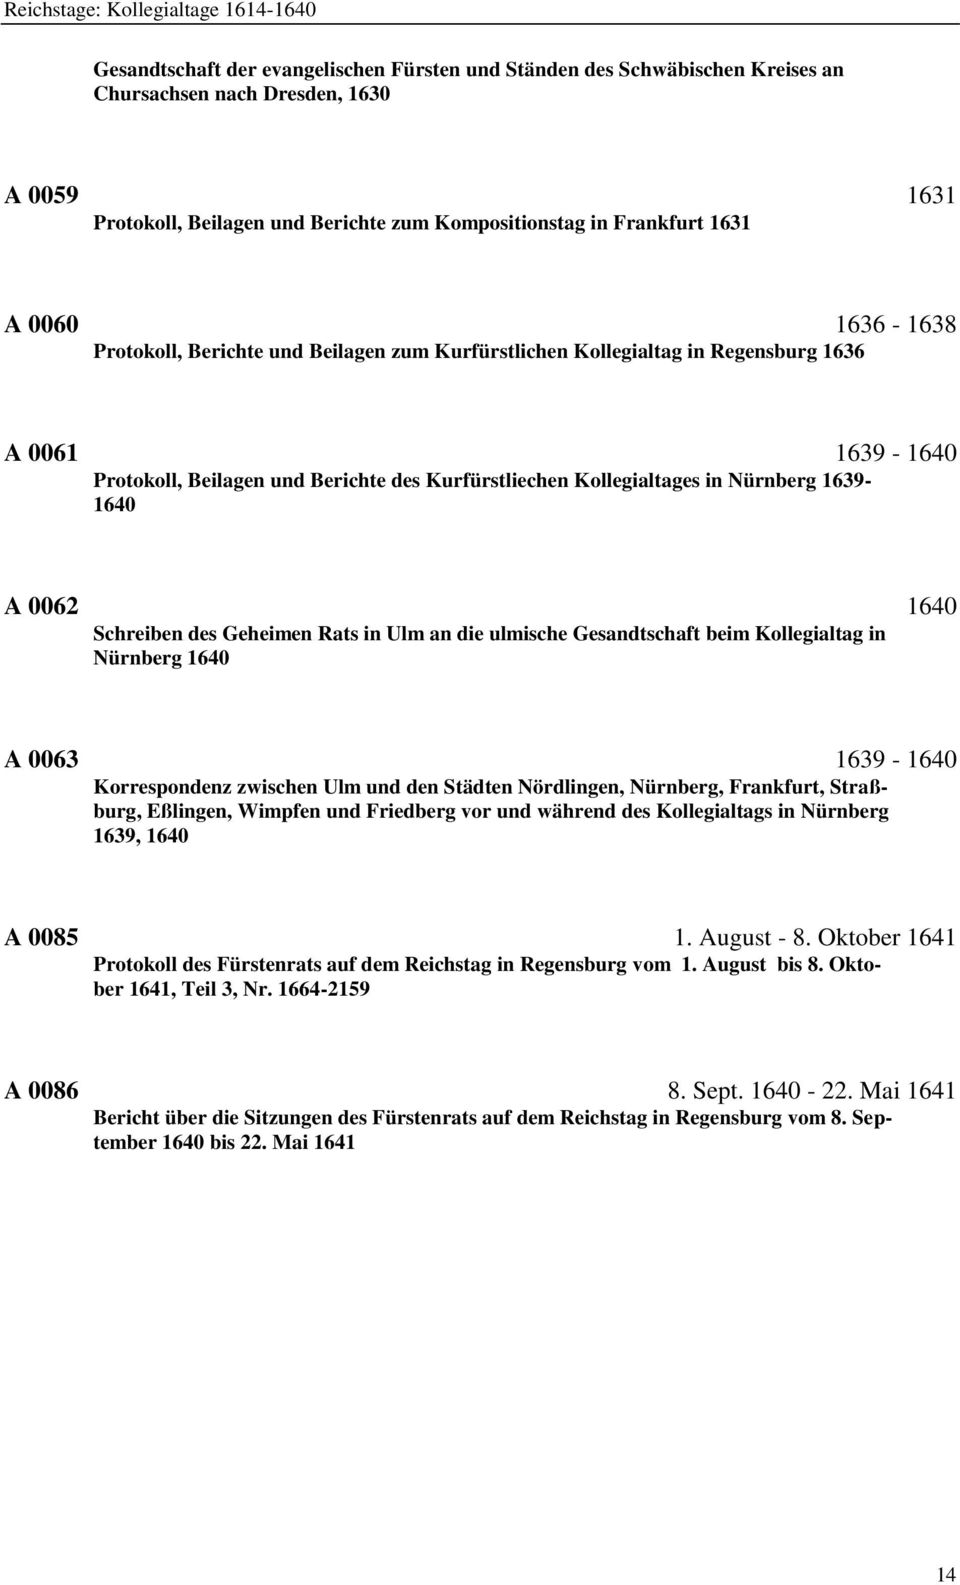 Kurfürstliechen Kollegialtages in Nürnberg 1639-1640 A 0062 1640 Schreiben des Geheimen Rats in Ulm an die ulmische Gesandtschaft beim Kollegialtag in Nürnberg 1640 A 0063 1639-1640 Korrespondenz